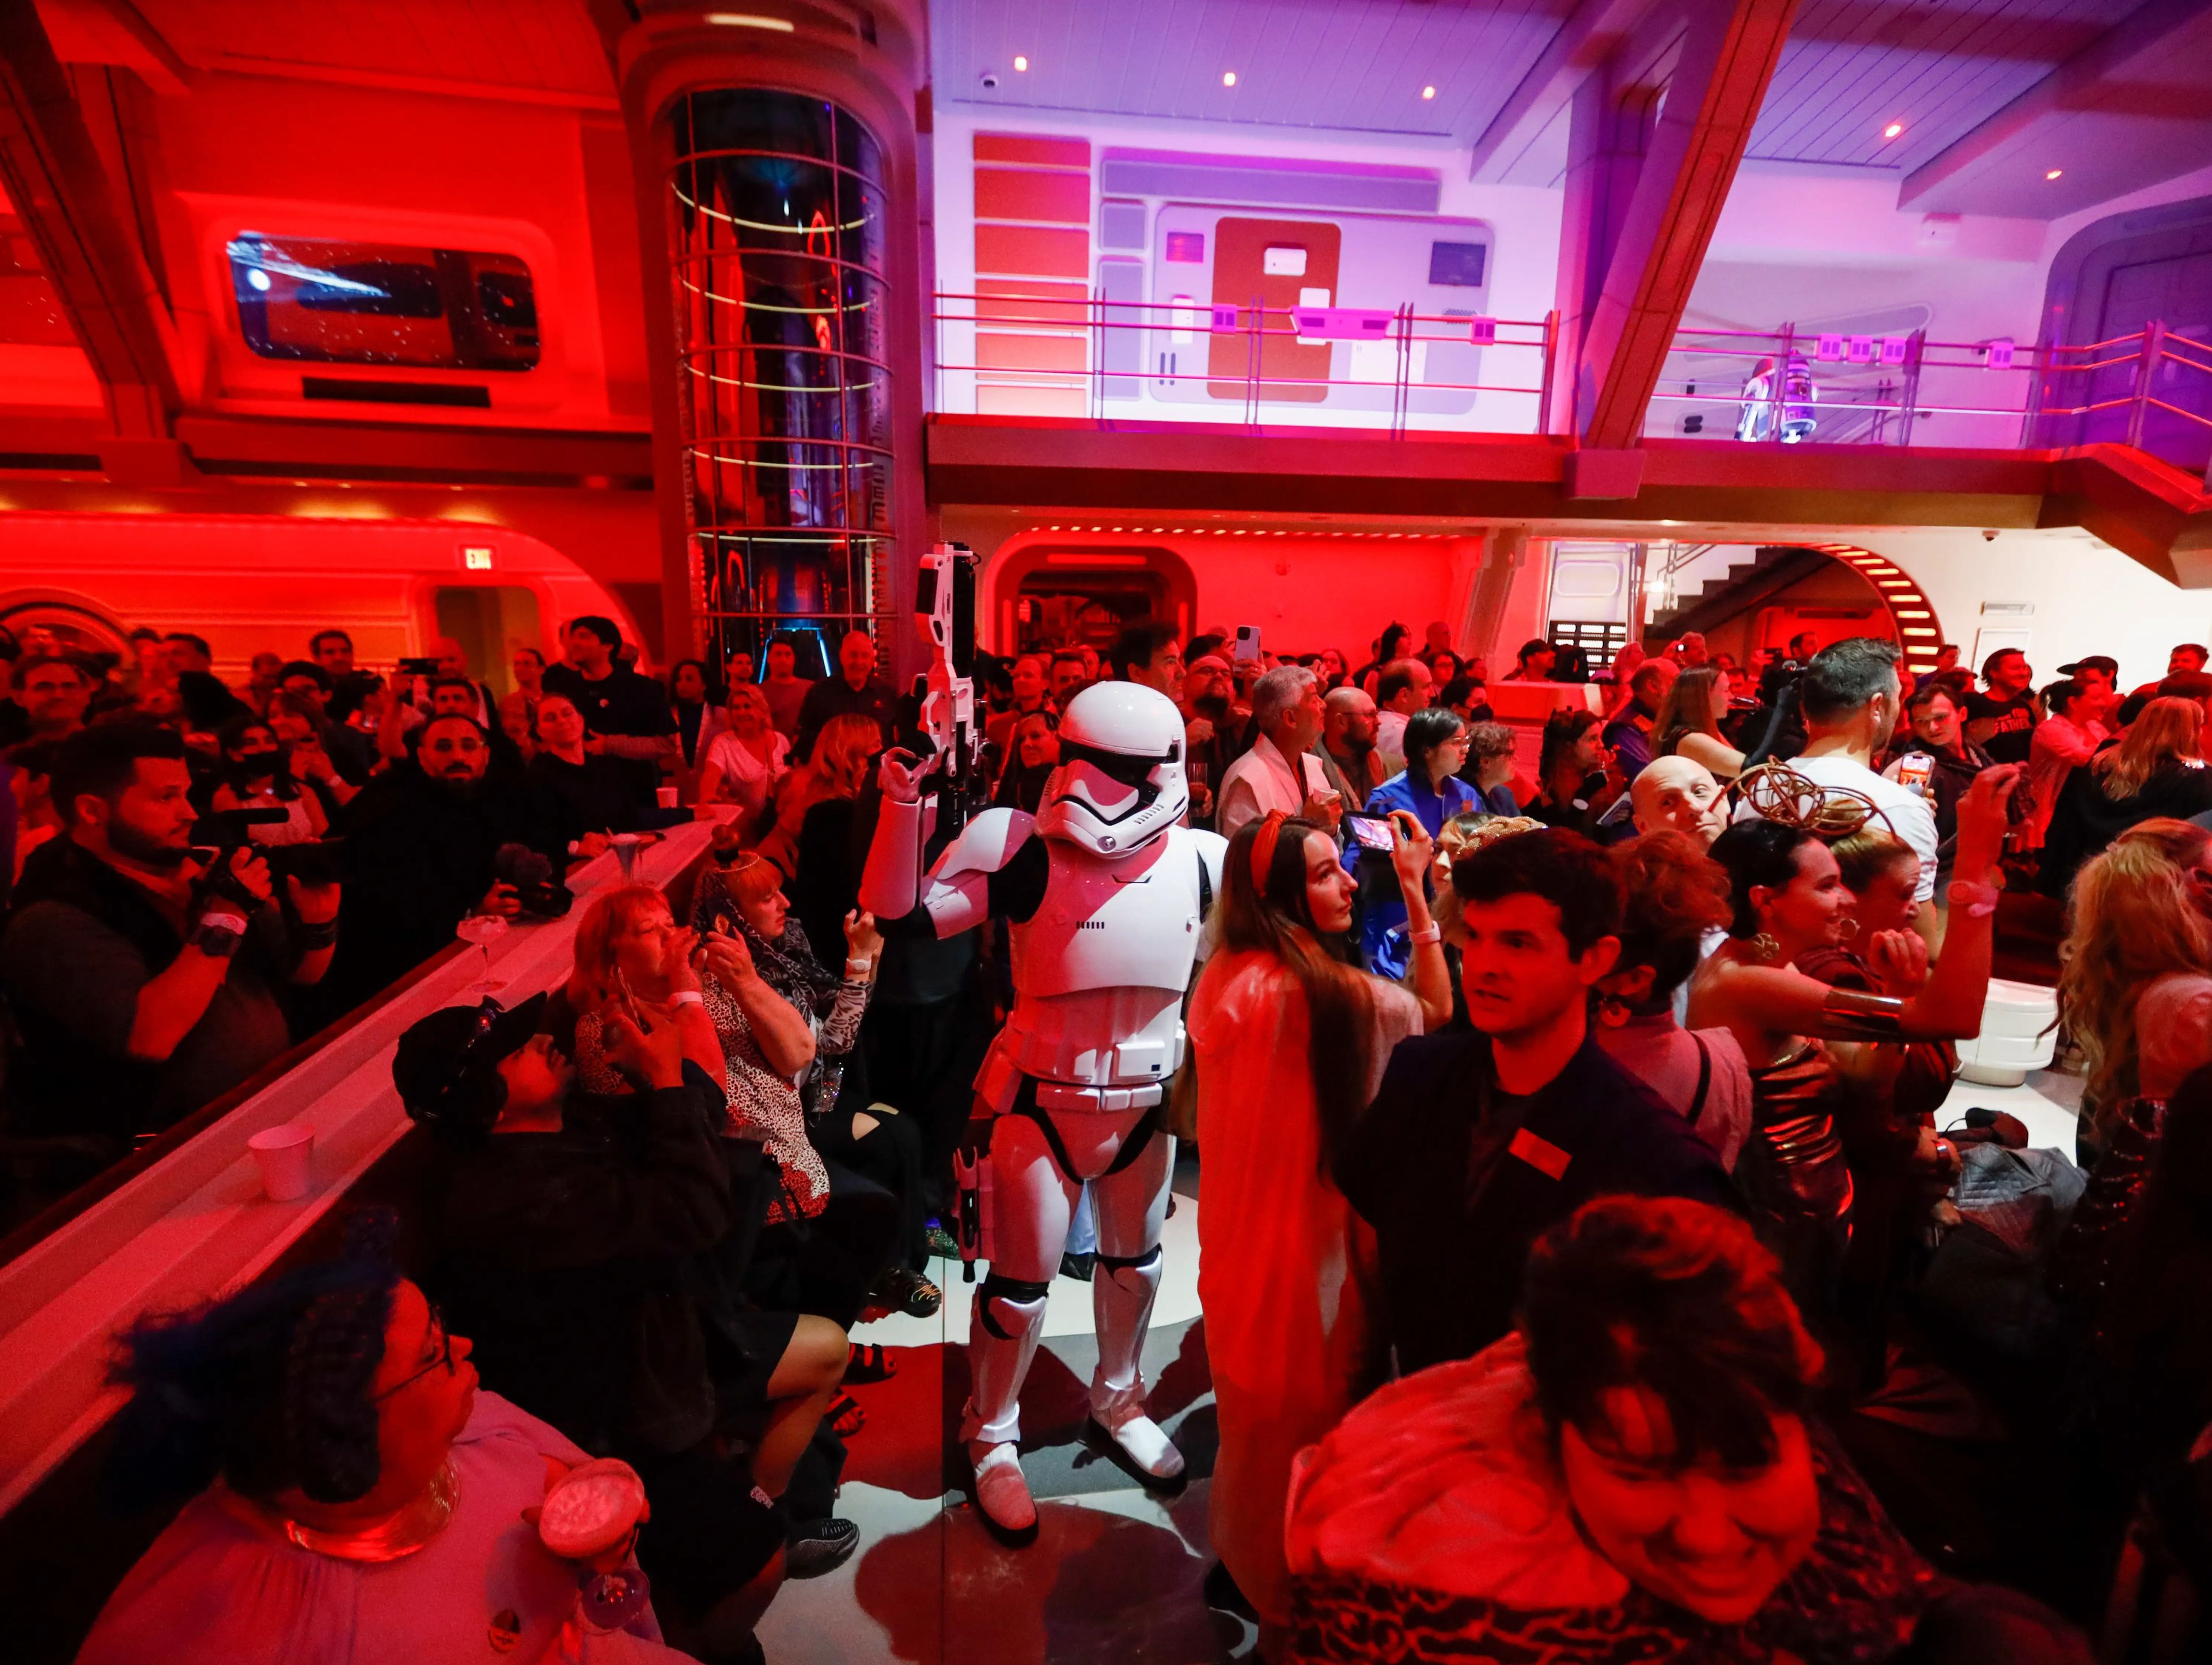 Muchos personajes, como los stormtroopers, formaban parte de la experiencia, y los visitantes podían interactuar libremente con ellos.